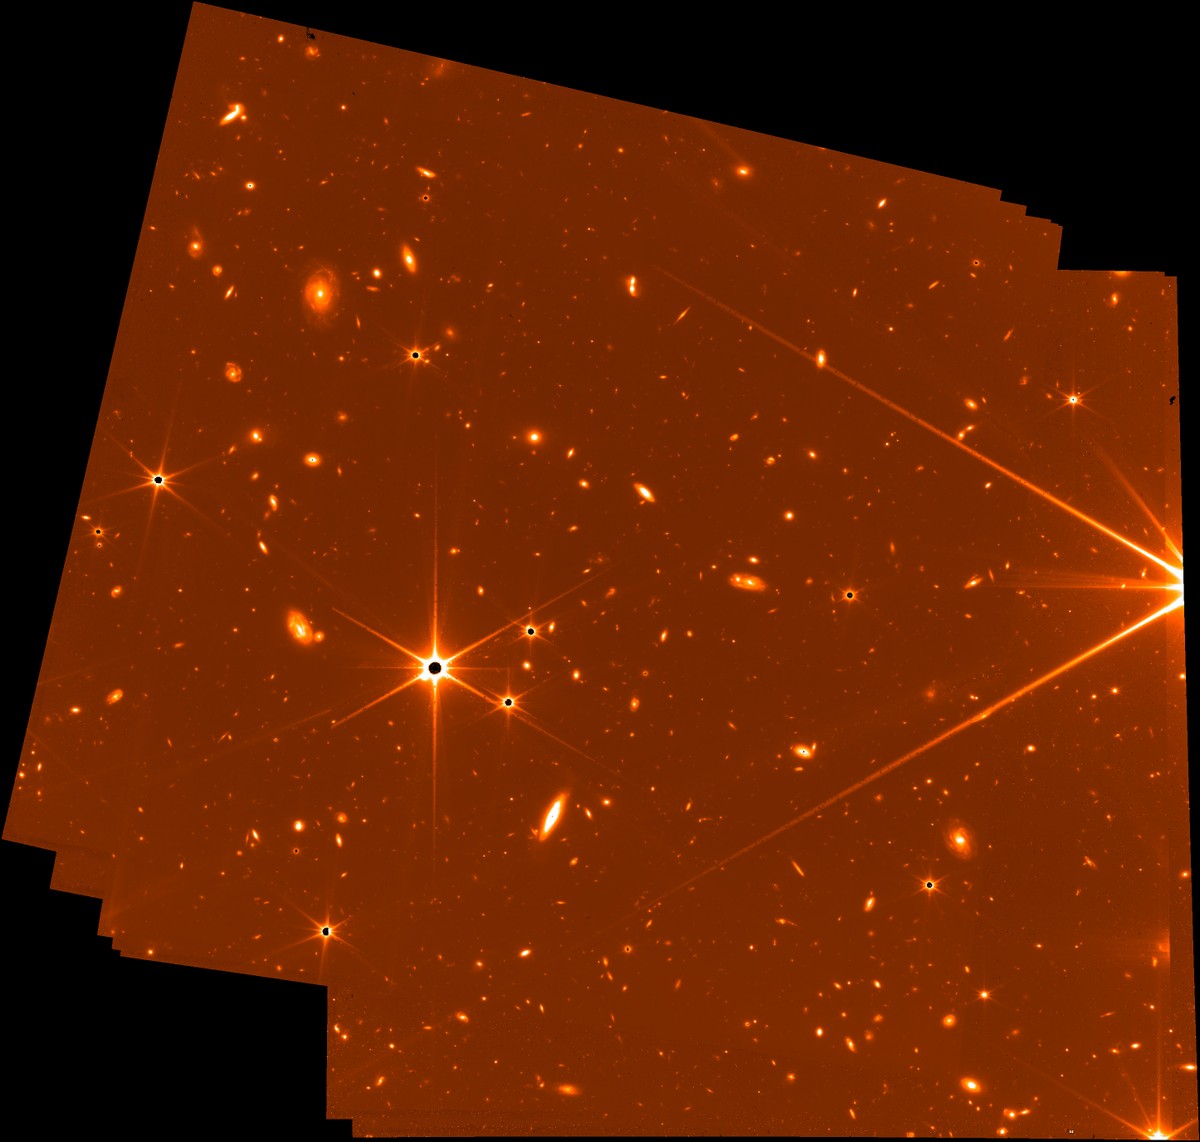 Explore el telescopio 3D James Webb, que lanzará sus primeras imágenes científicas esta semana |  Ciencias